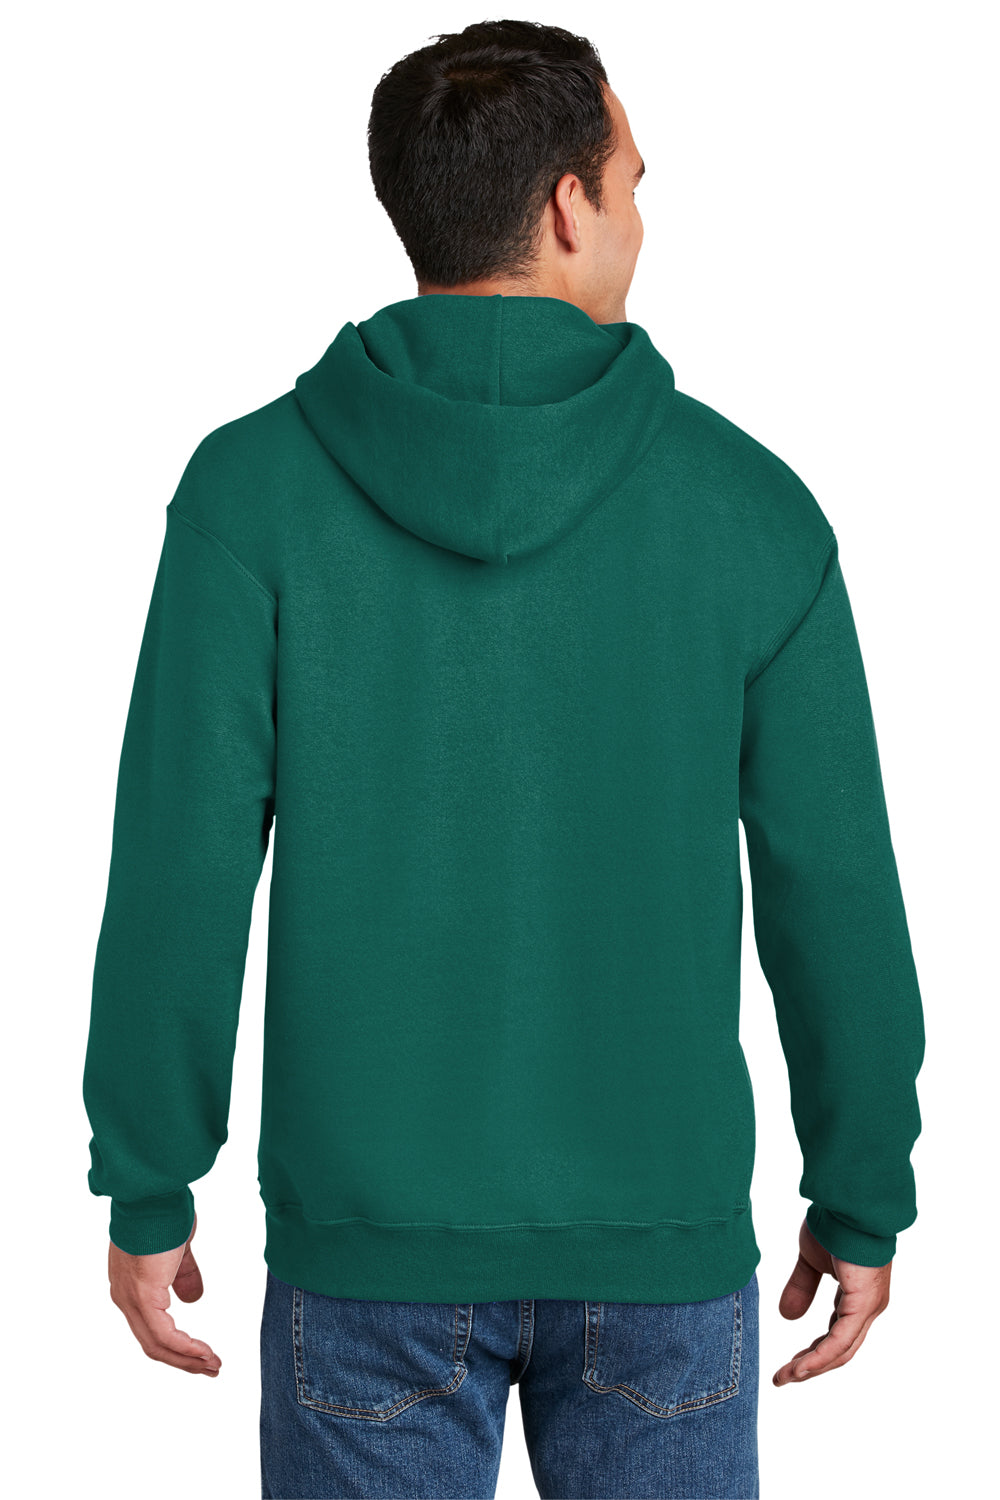 Hanes Mens Ultimate Cotton PrintPro XP Hooded Sweatshirt Hoodie Cactus Green Back